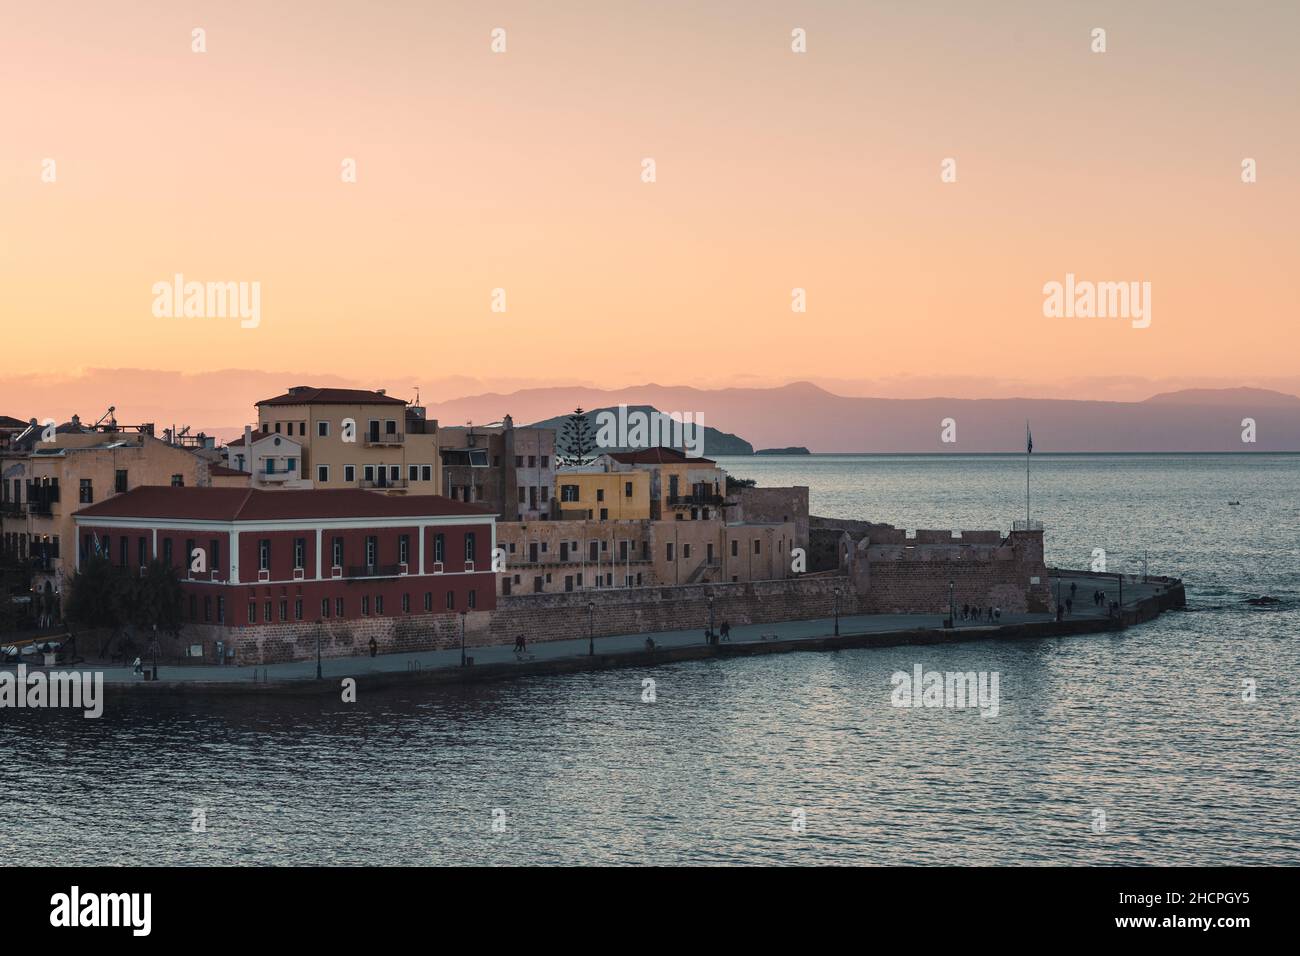 Wunderschöner Sonnenuntergang am alten venezianischen Hafen und der Festung in Chania, Kreta Island - Griechenland Stockfoto